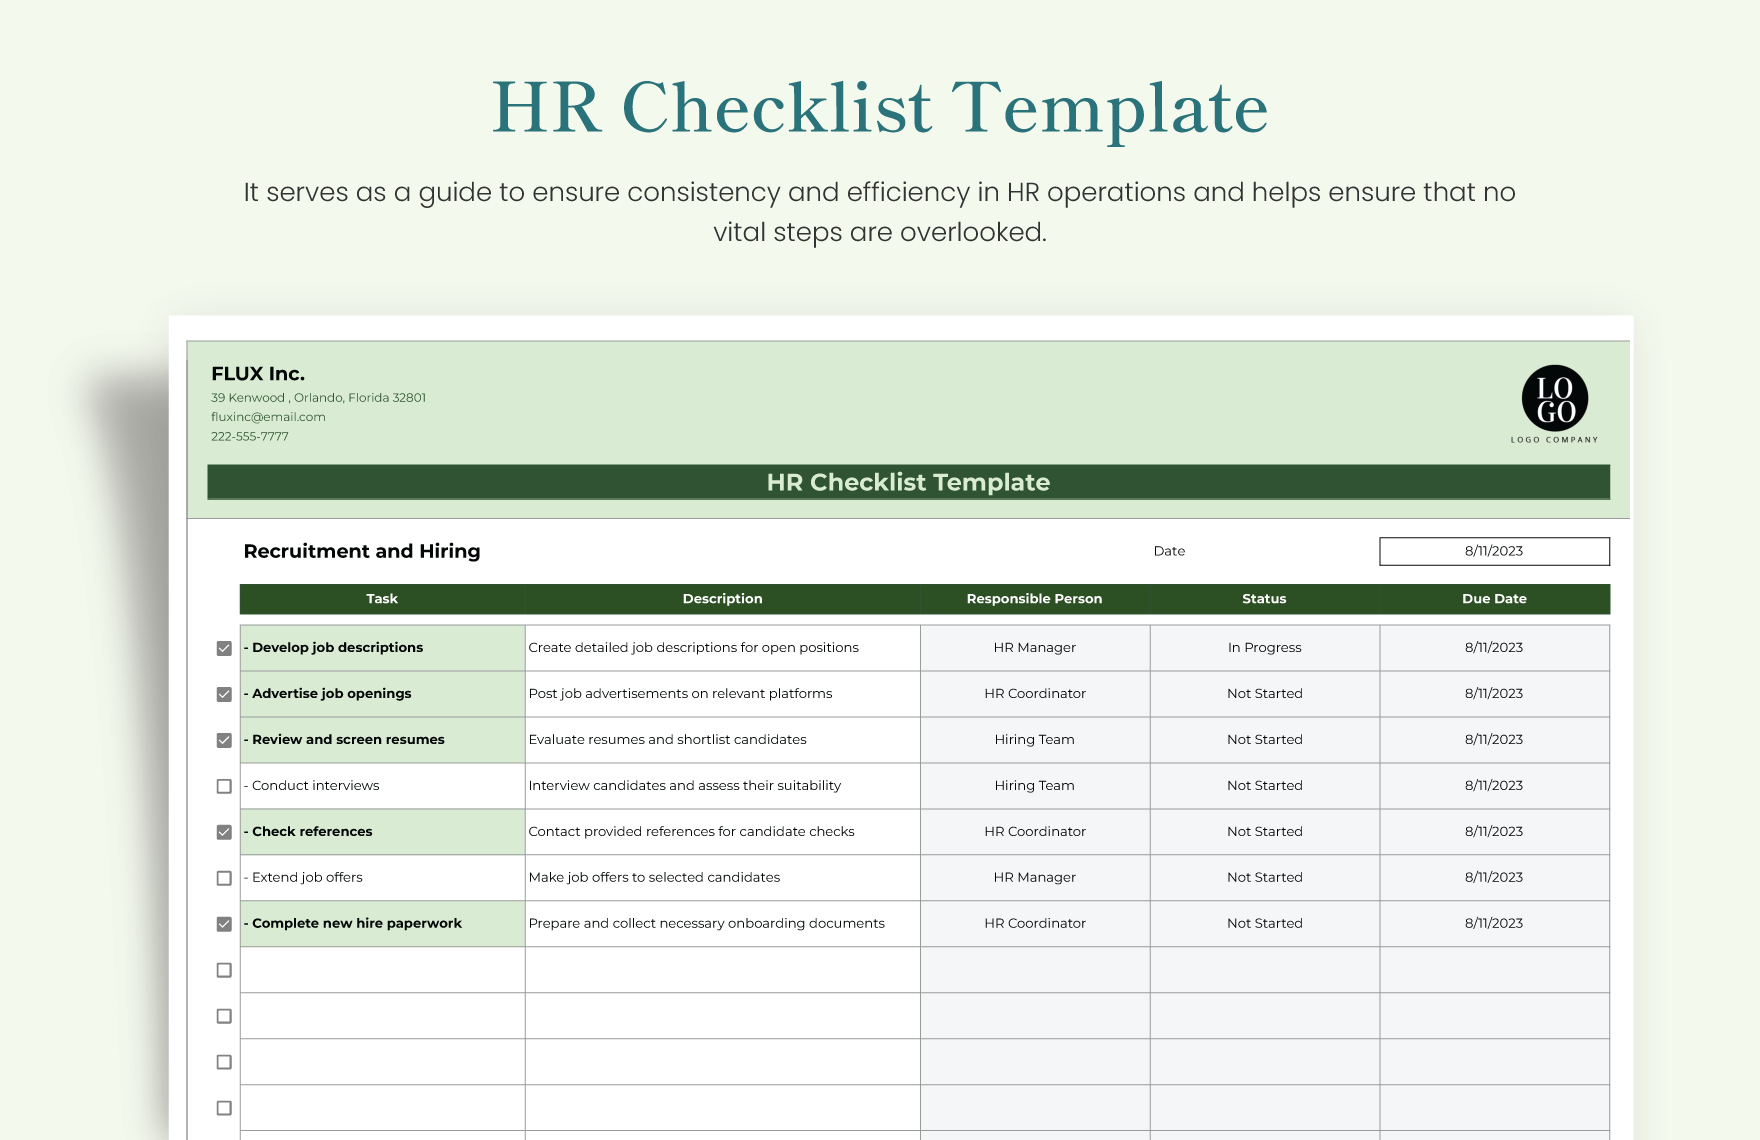 HR Checklist Template